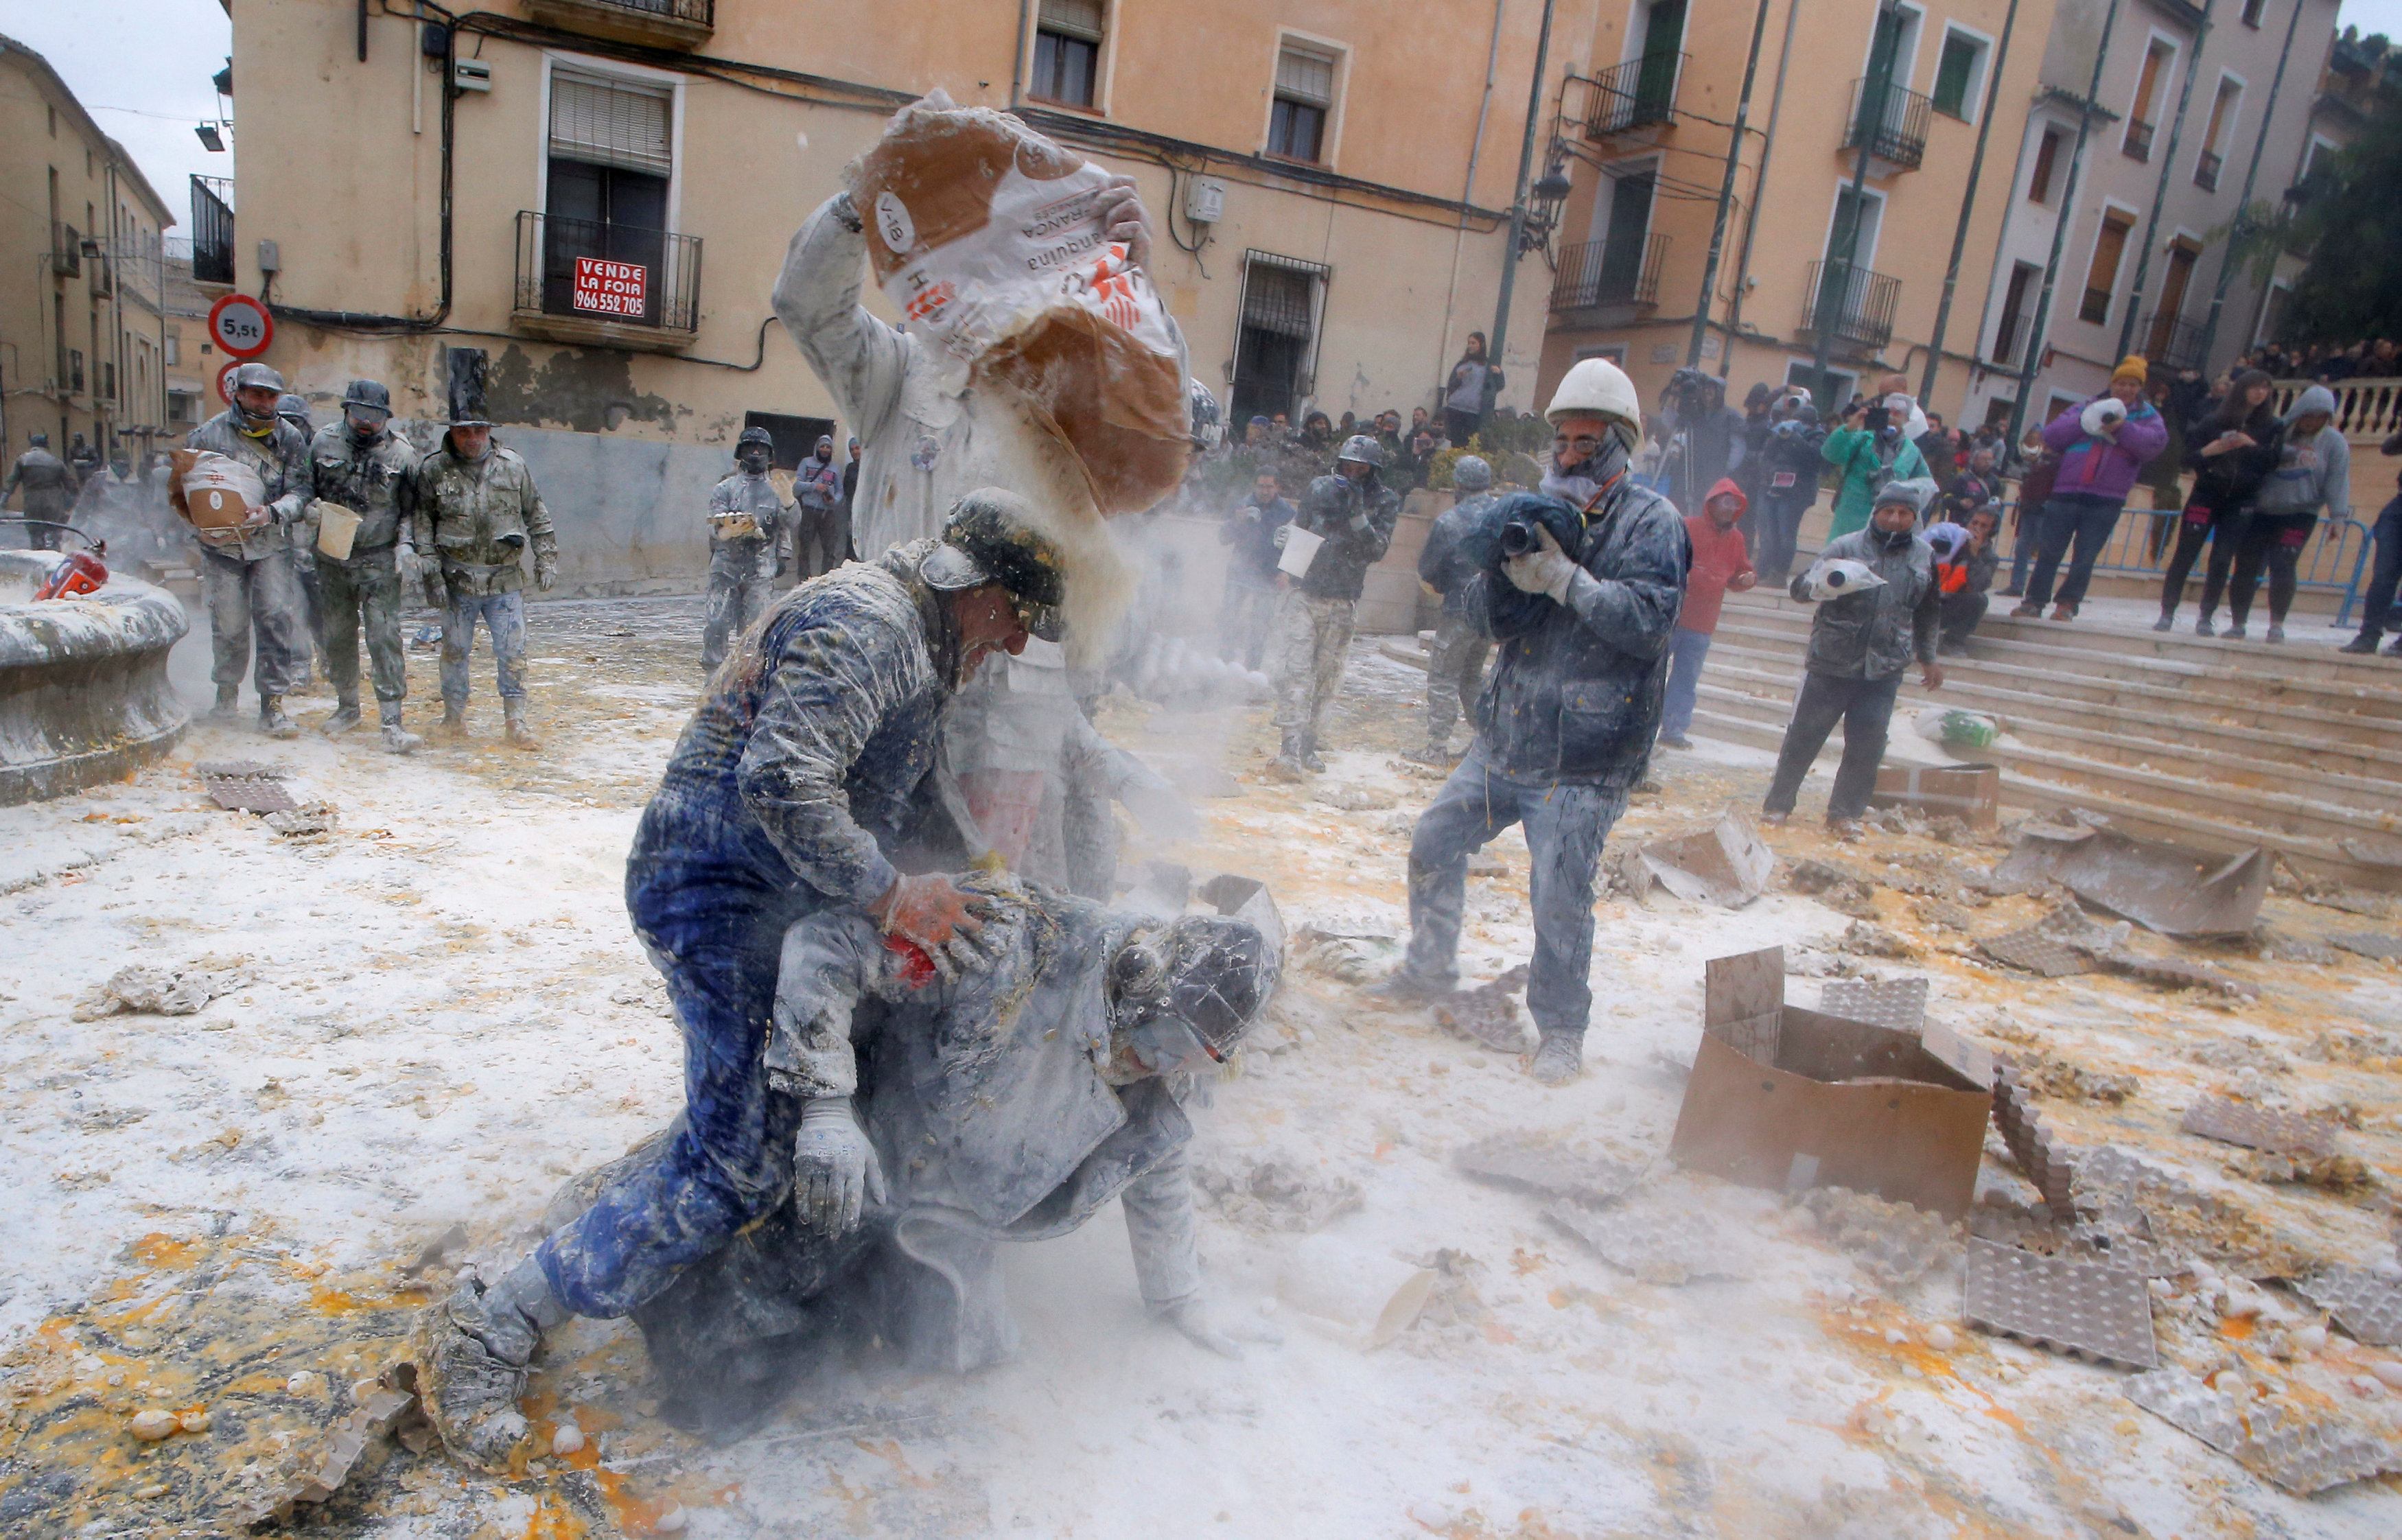 Spain's 'flour war' : the battle of Enfarinats